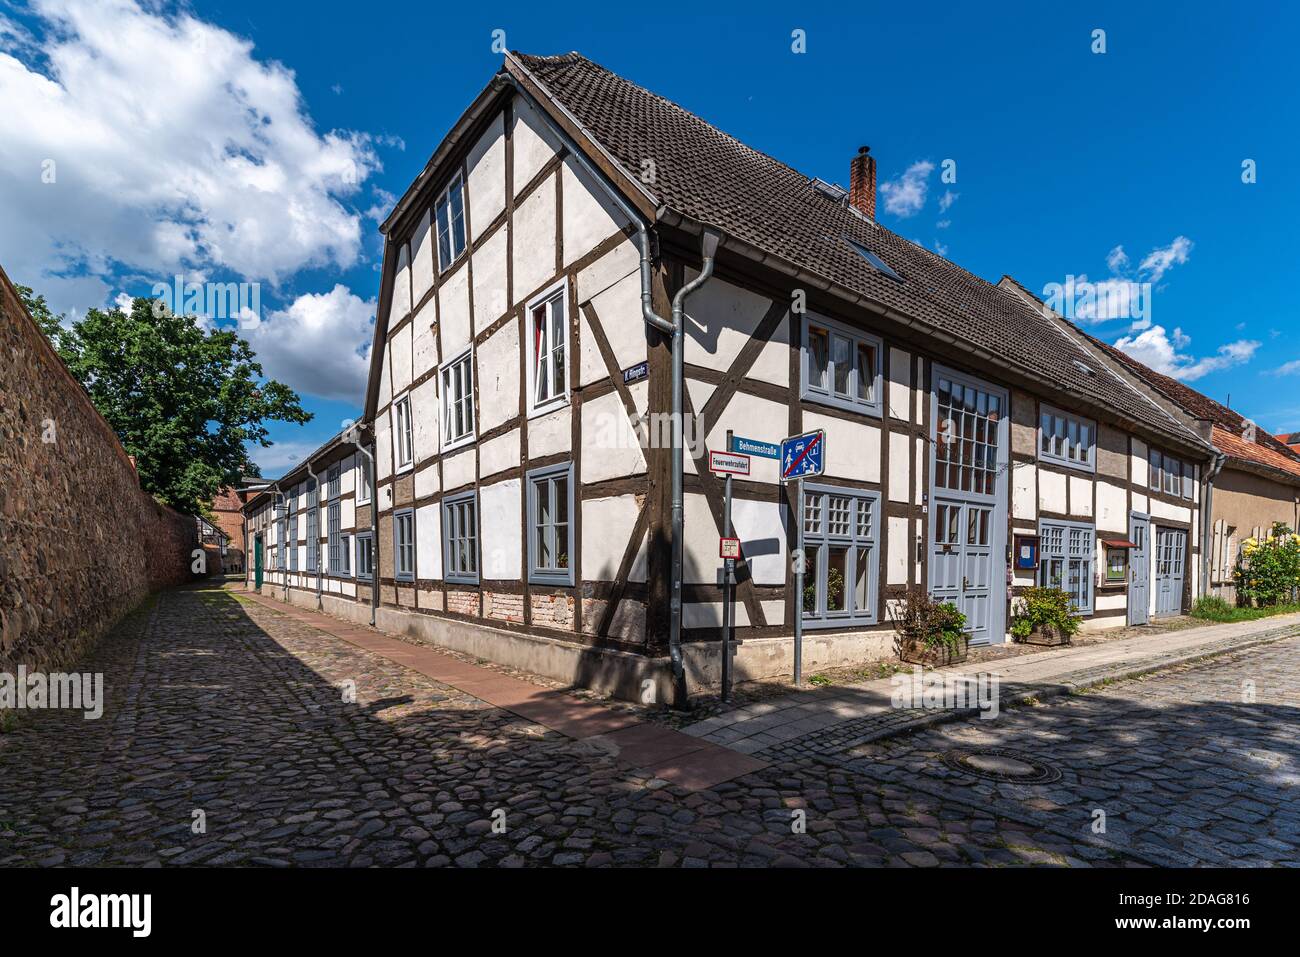 Neubrandenburg, Stadtansicht, altes Fachwerkhaus Foto de stock